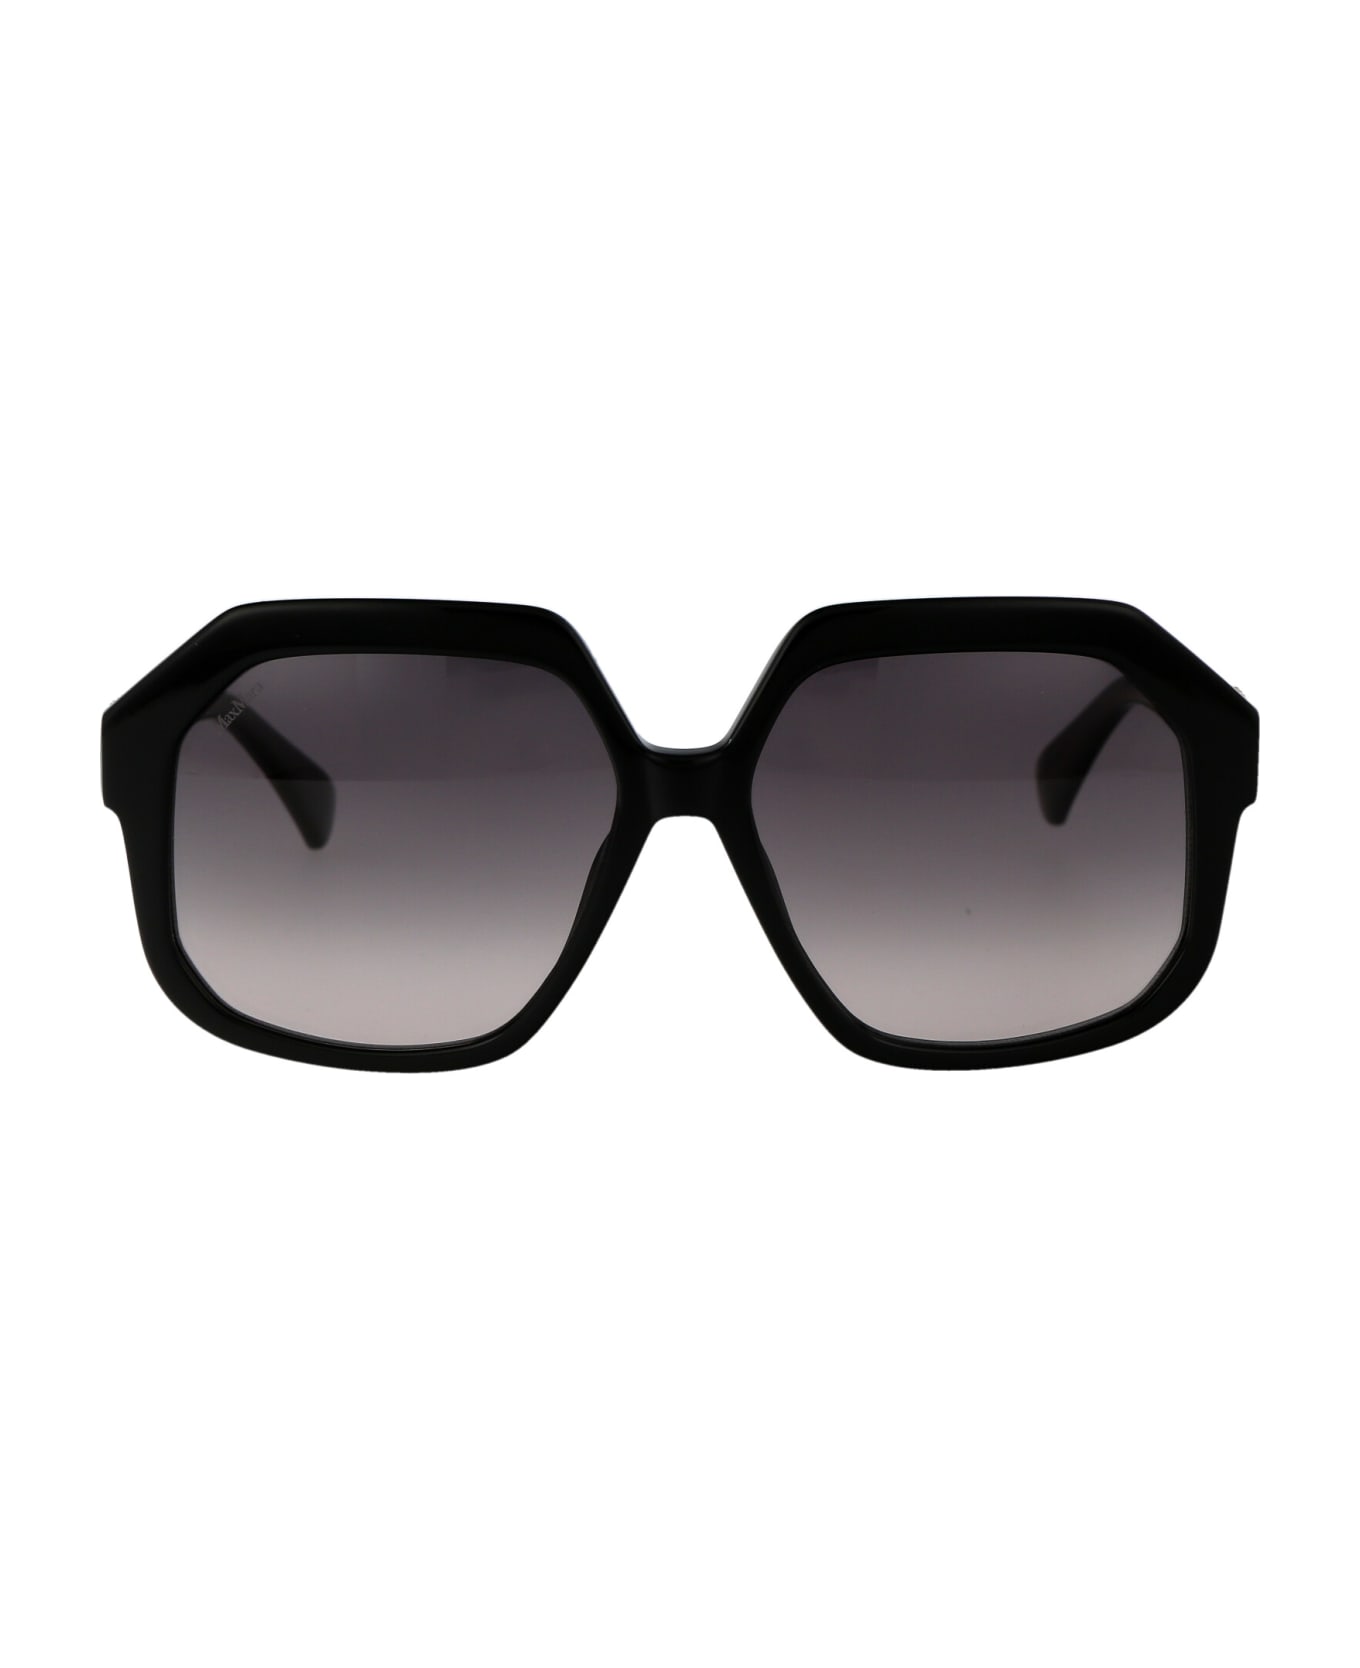 Max Mara Emme12 Sunglasses - 01B Nero Lucido/Fumo Grad